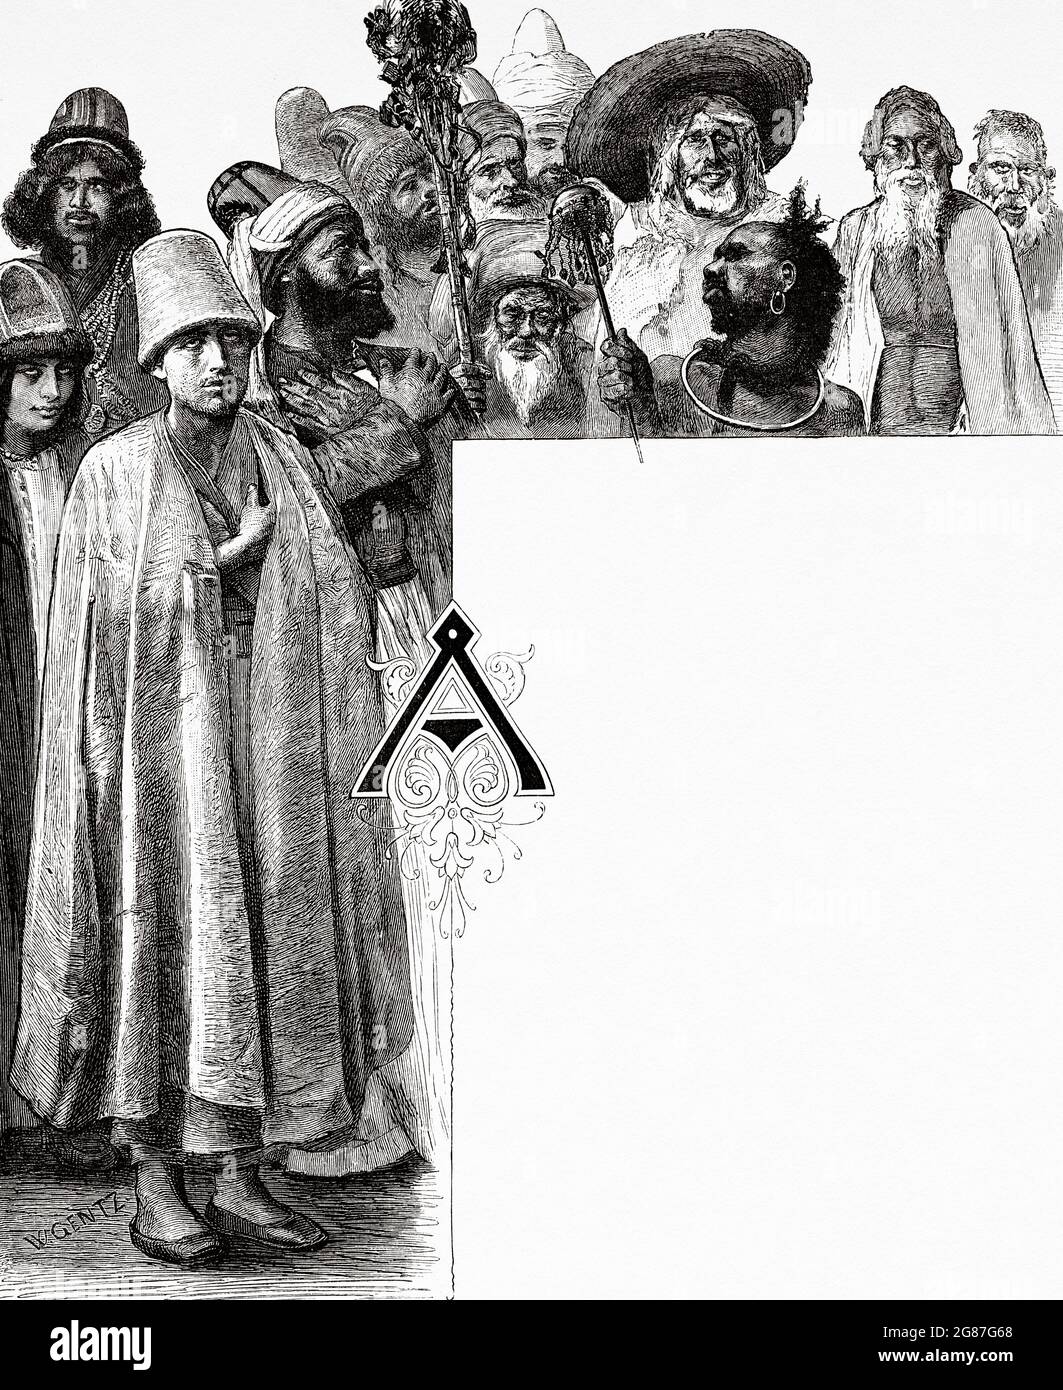 Derviches et autres saints hommes d'Égypte, d'Afrique du Nord. Ancienne illustration gravée du XIXe siècle d'El Mundo Ilustrado 1880 Banque D'Images